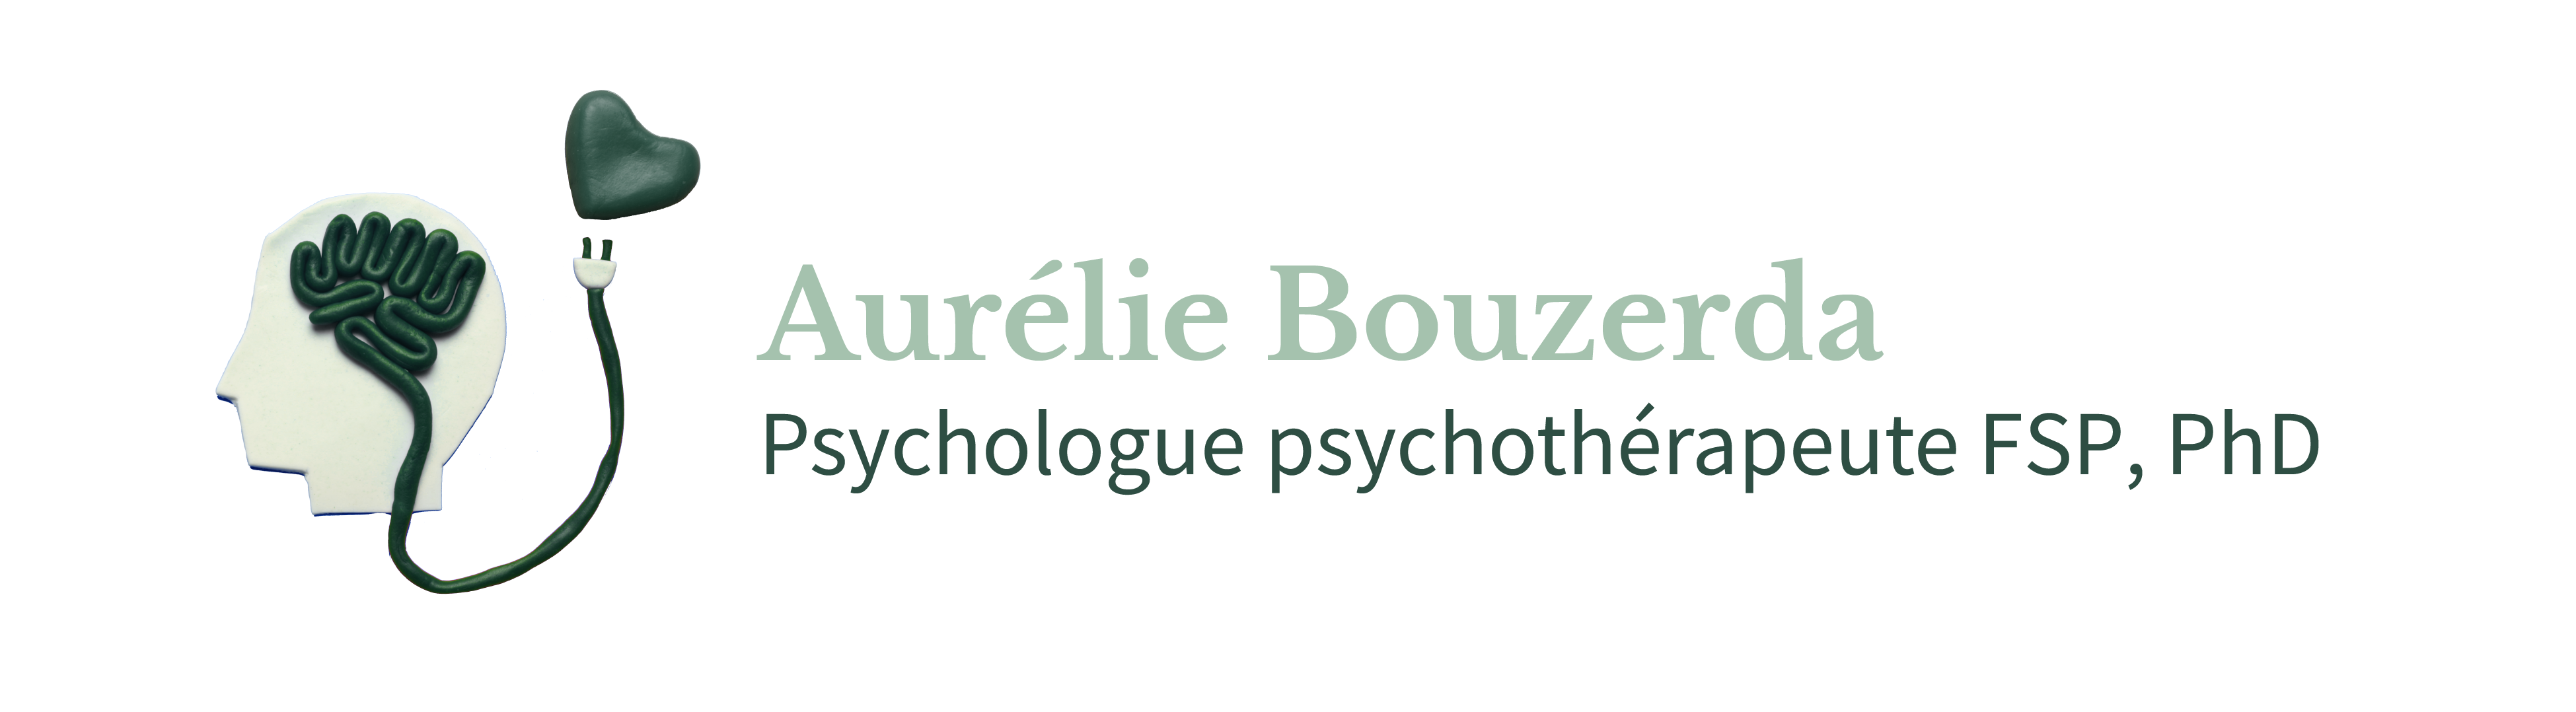 NeuroFeedback - Aurélie Bouzerda psychologue psychothérapeute